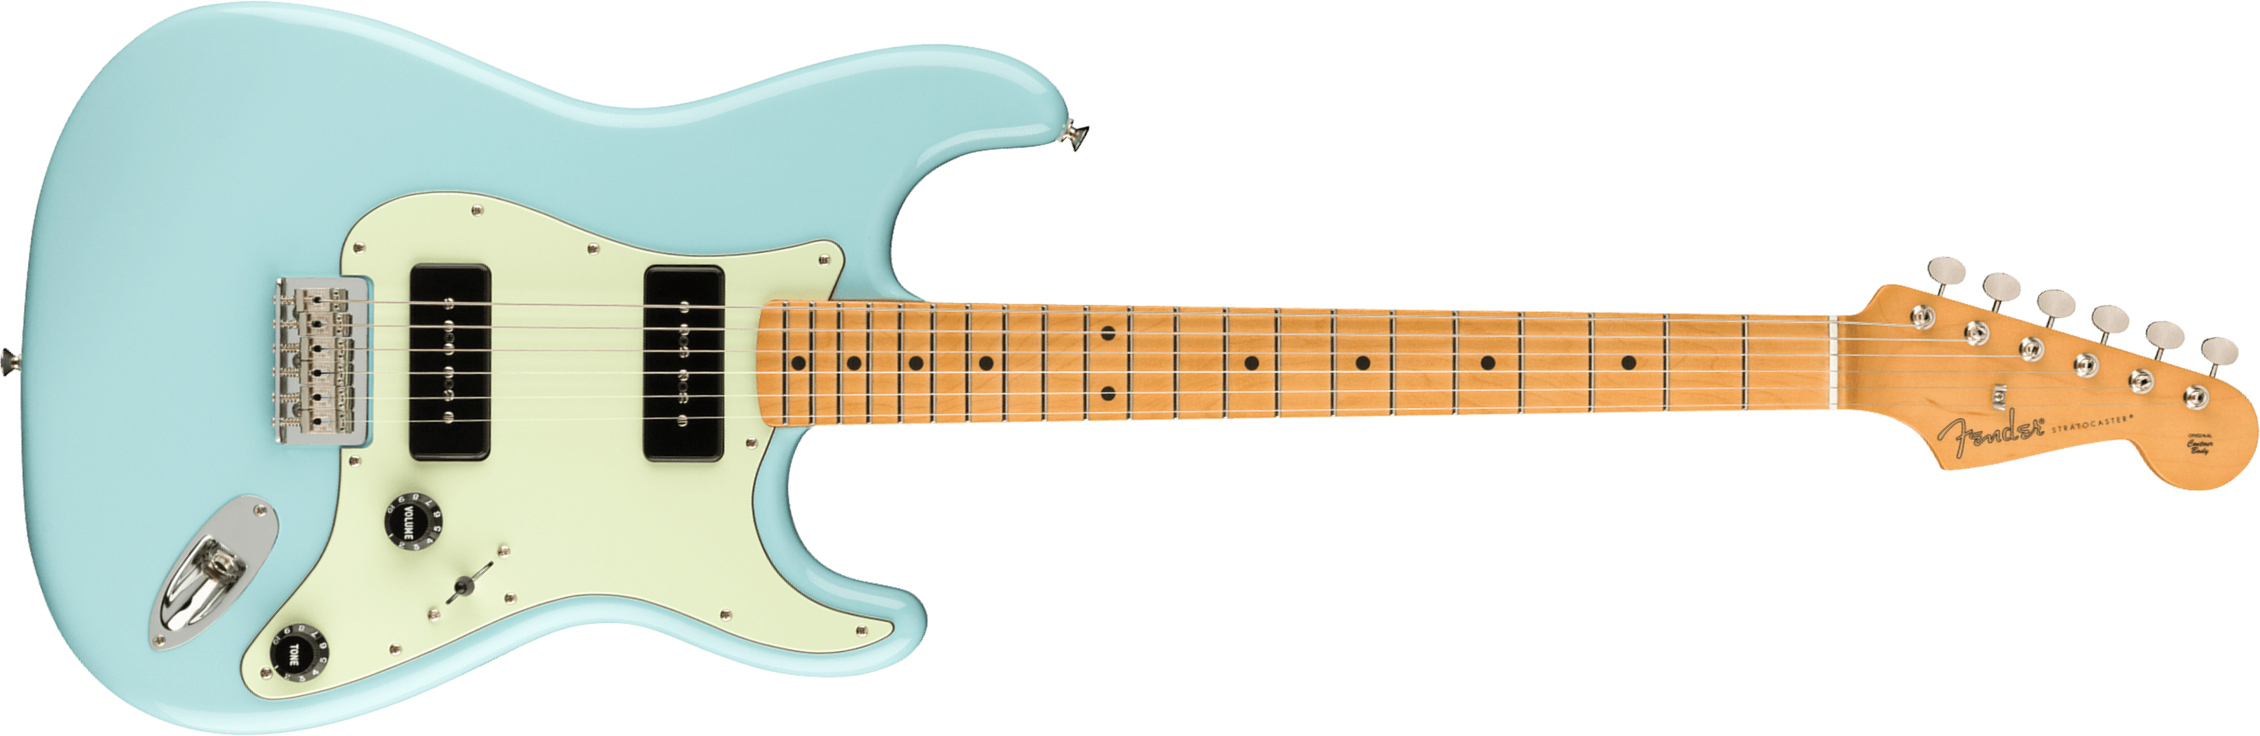 Fender Strat Noventa Mex Ss Ht Mn +housse - Daphne Blue - Guitare Électrique Forme Str - Main picture